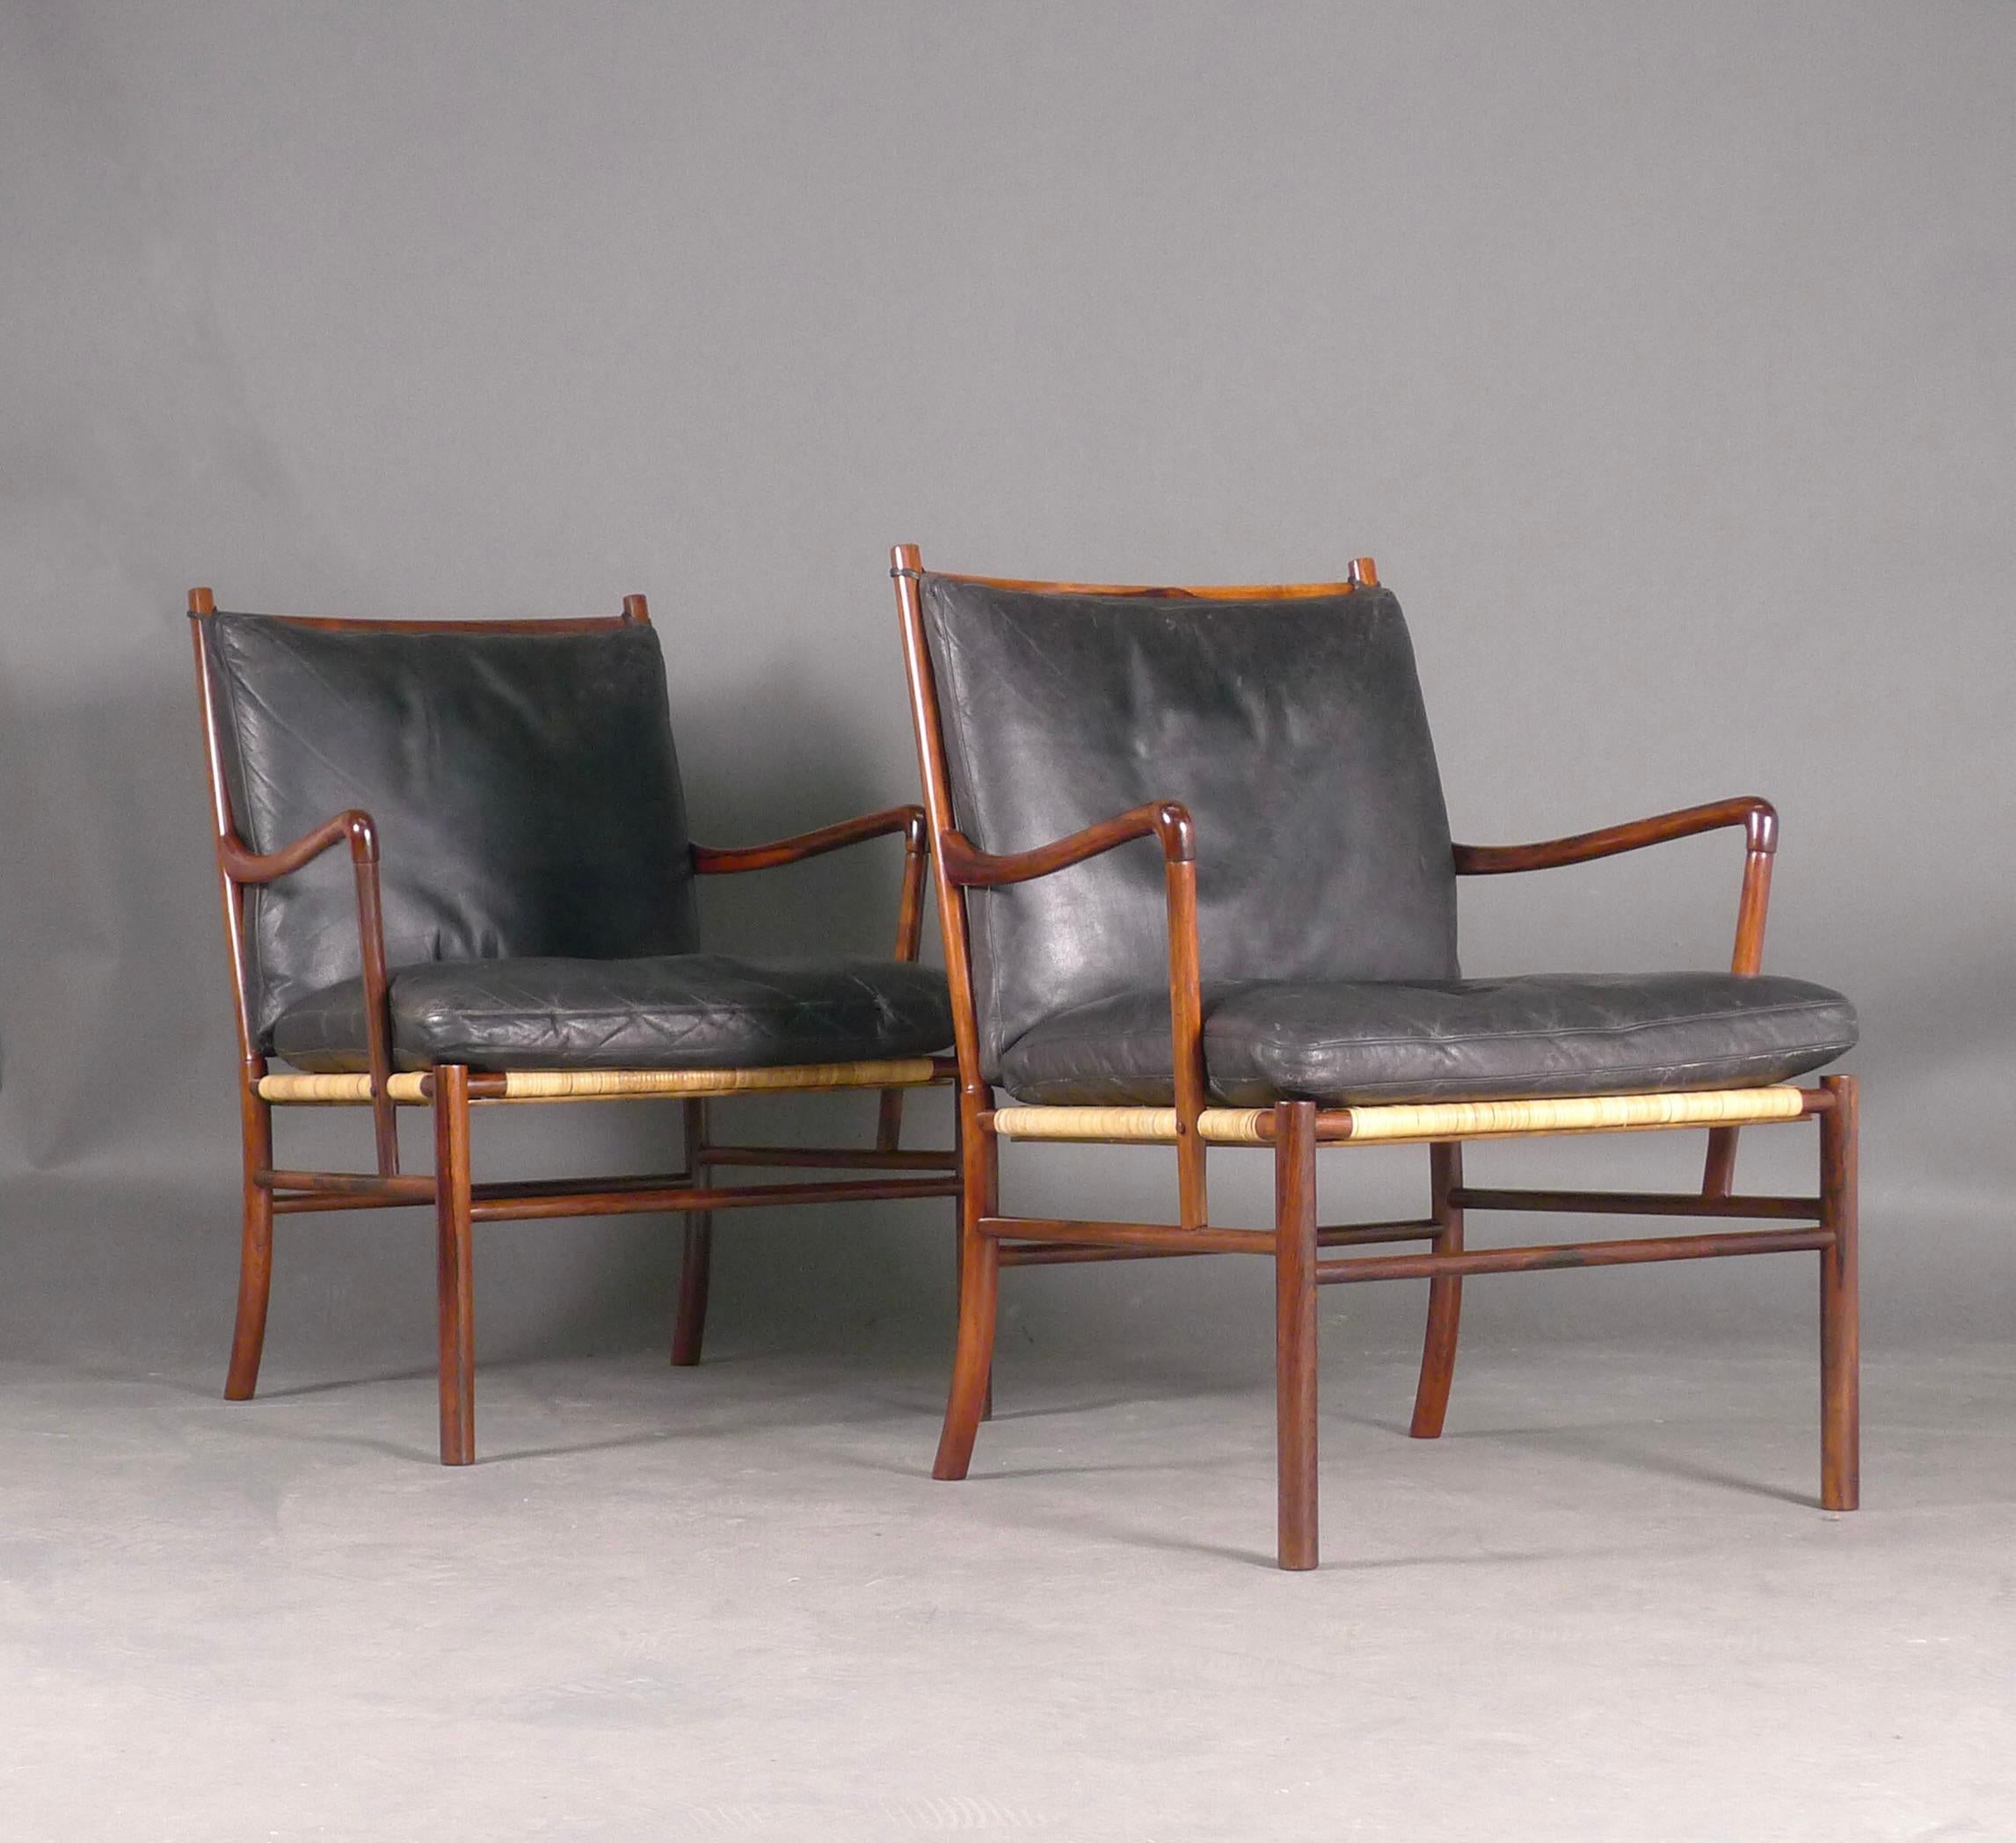 Cuir Paire de chaises coloniales Ole Wanscher, modèle PJ149, 1ère édition 1949, bois de rose